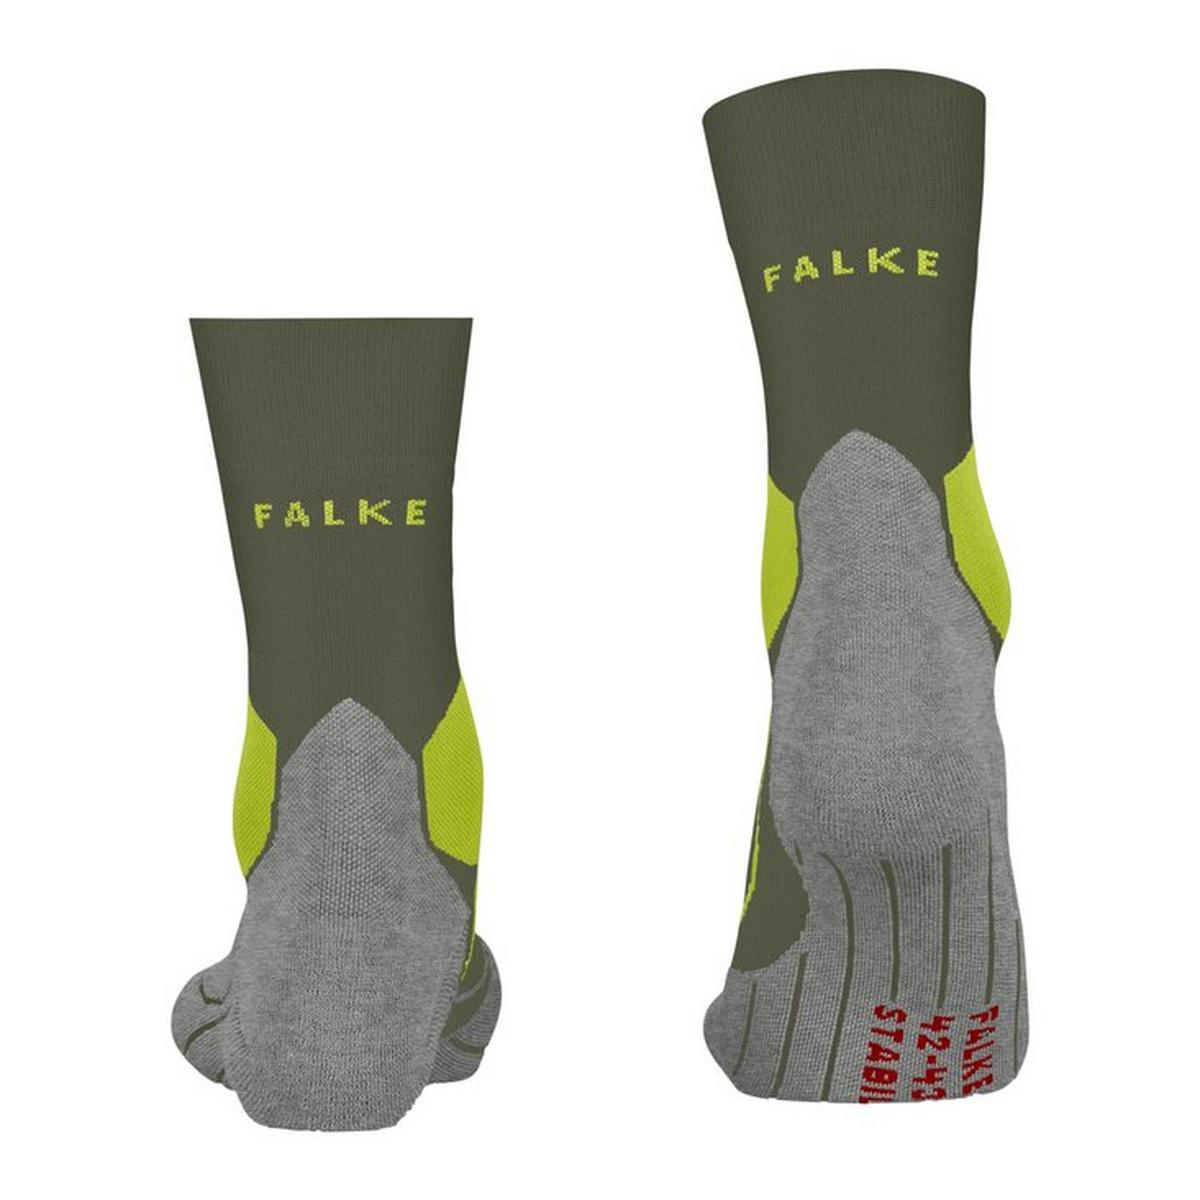 Falke Men's Stabilizing Cool Socks - Grey/Green